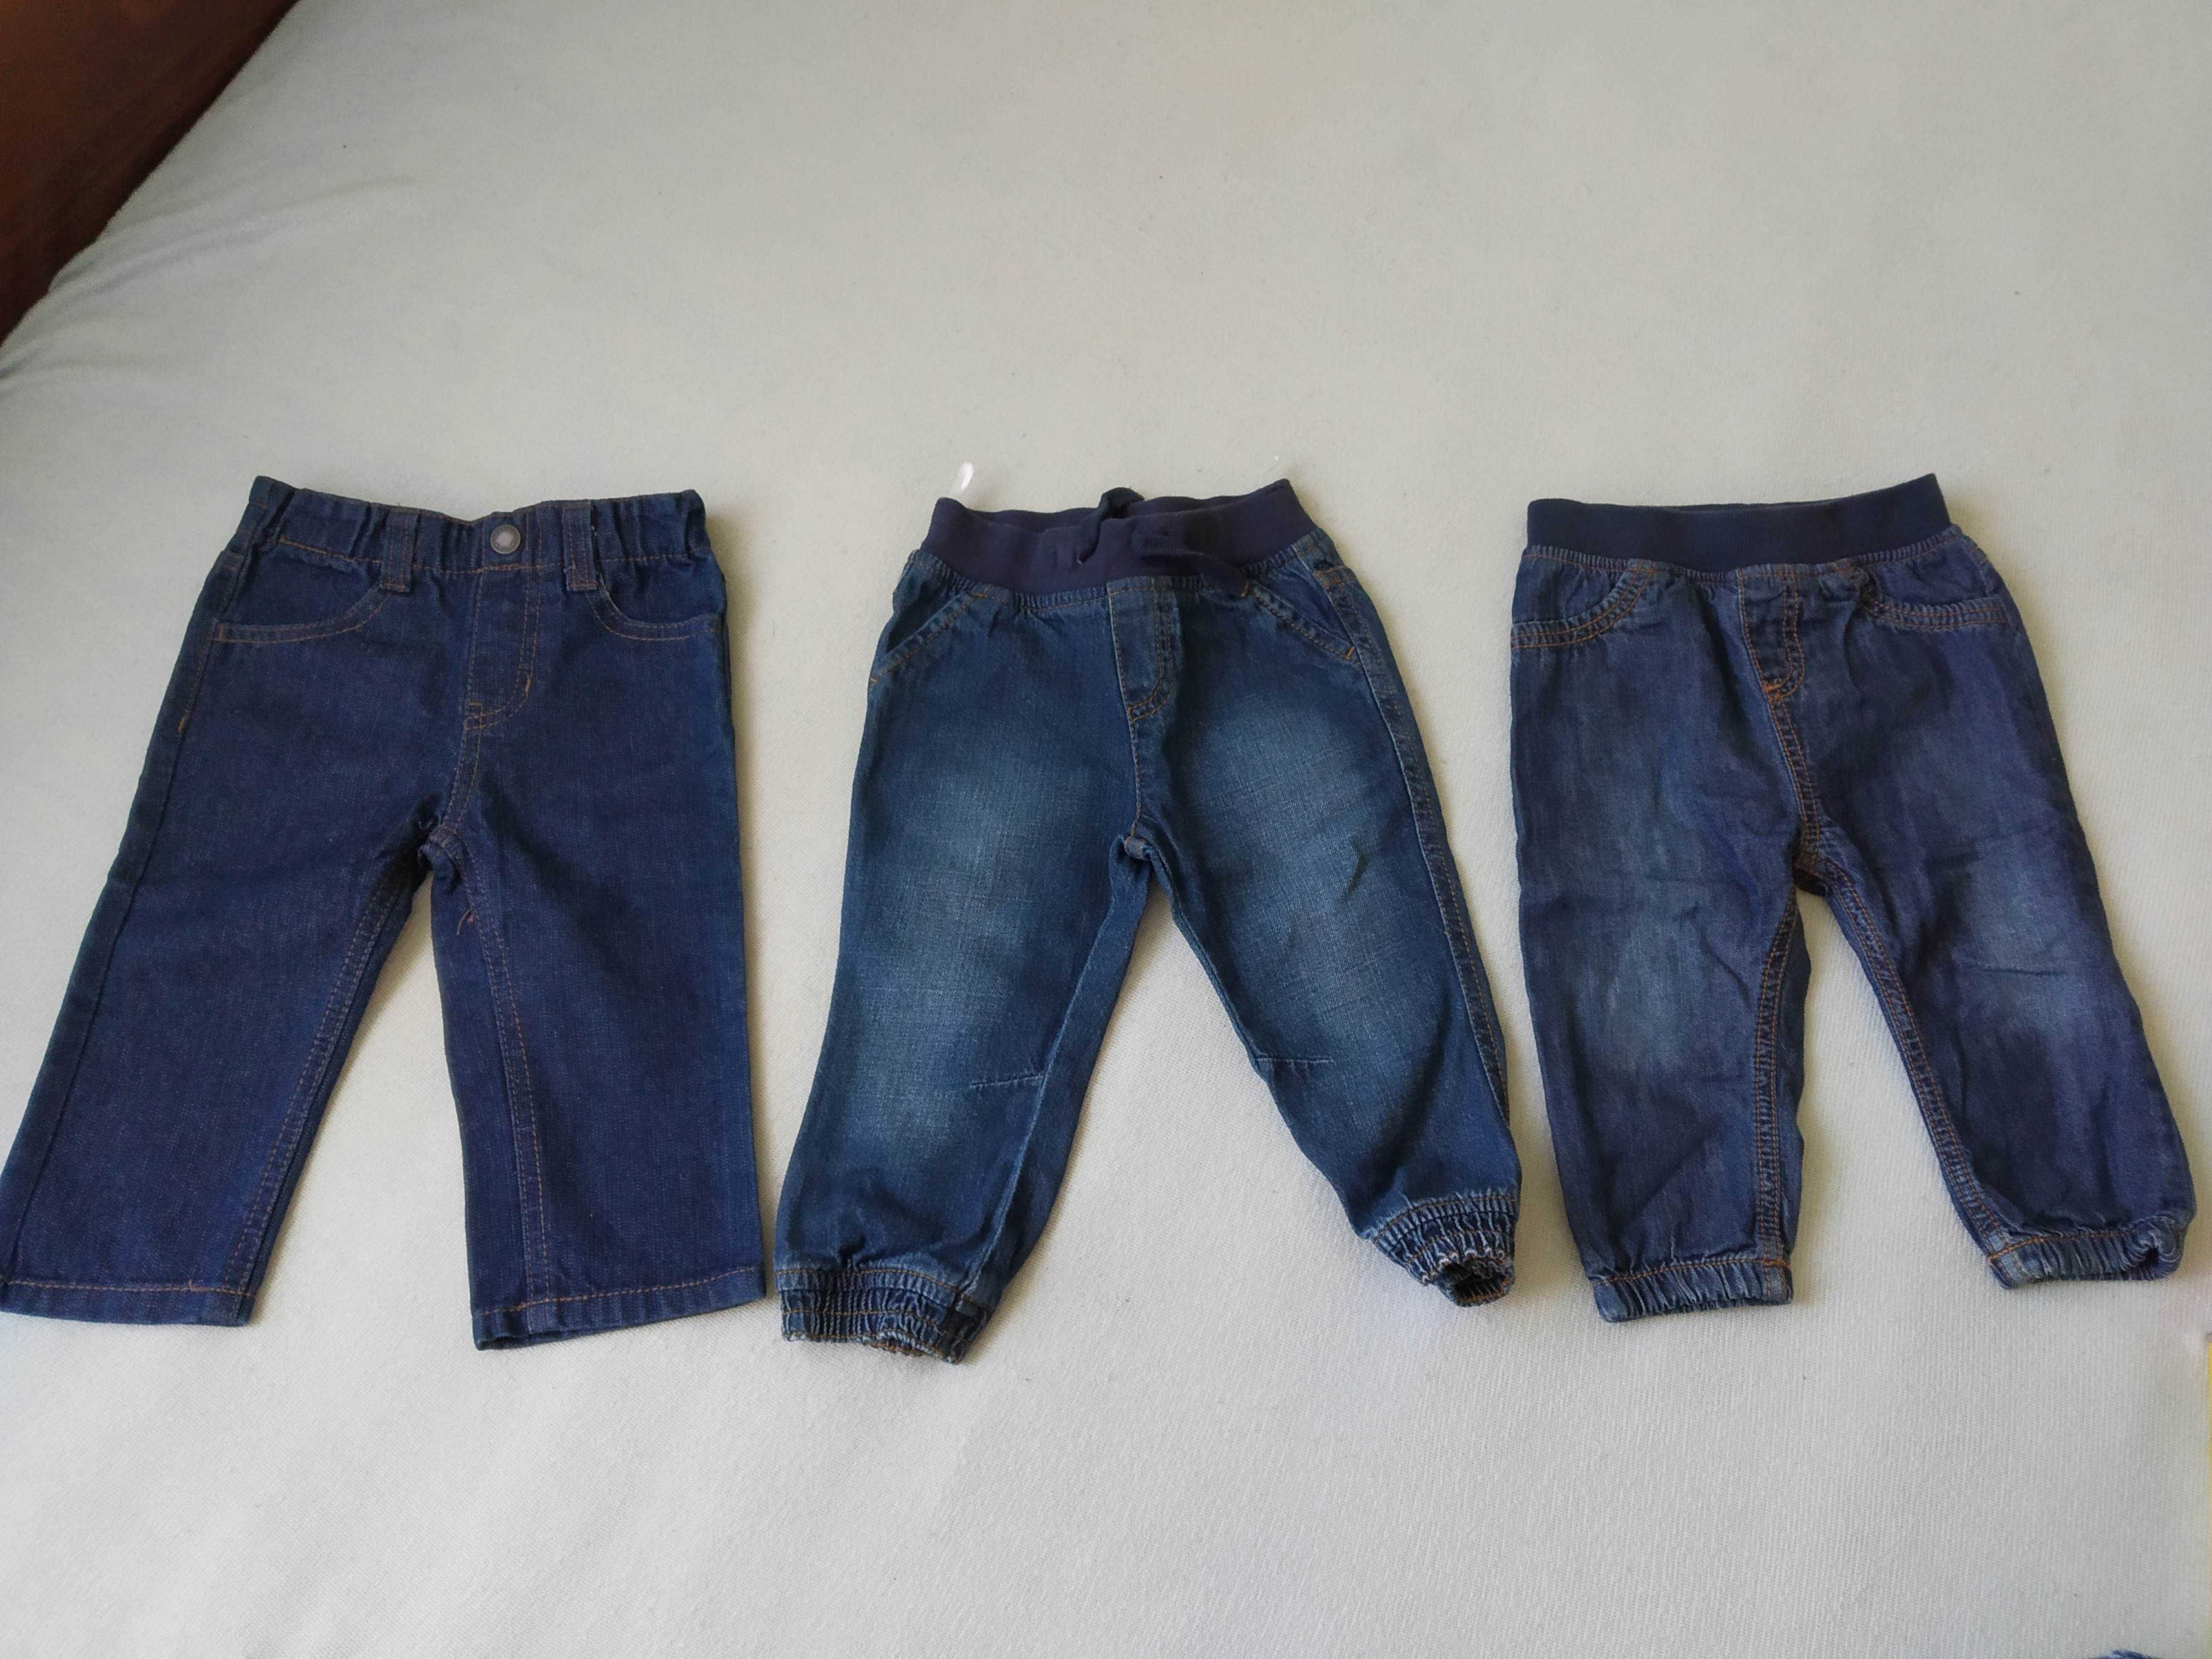 Paka spodni 80 cena za 3 pary! jeansy dżinsy dziewczęce chłopięce